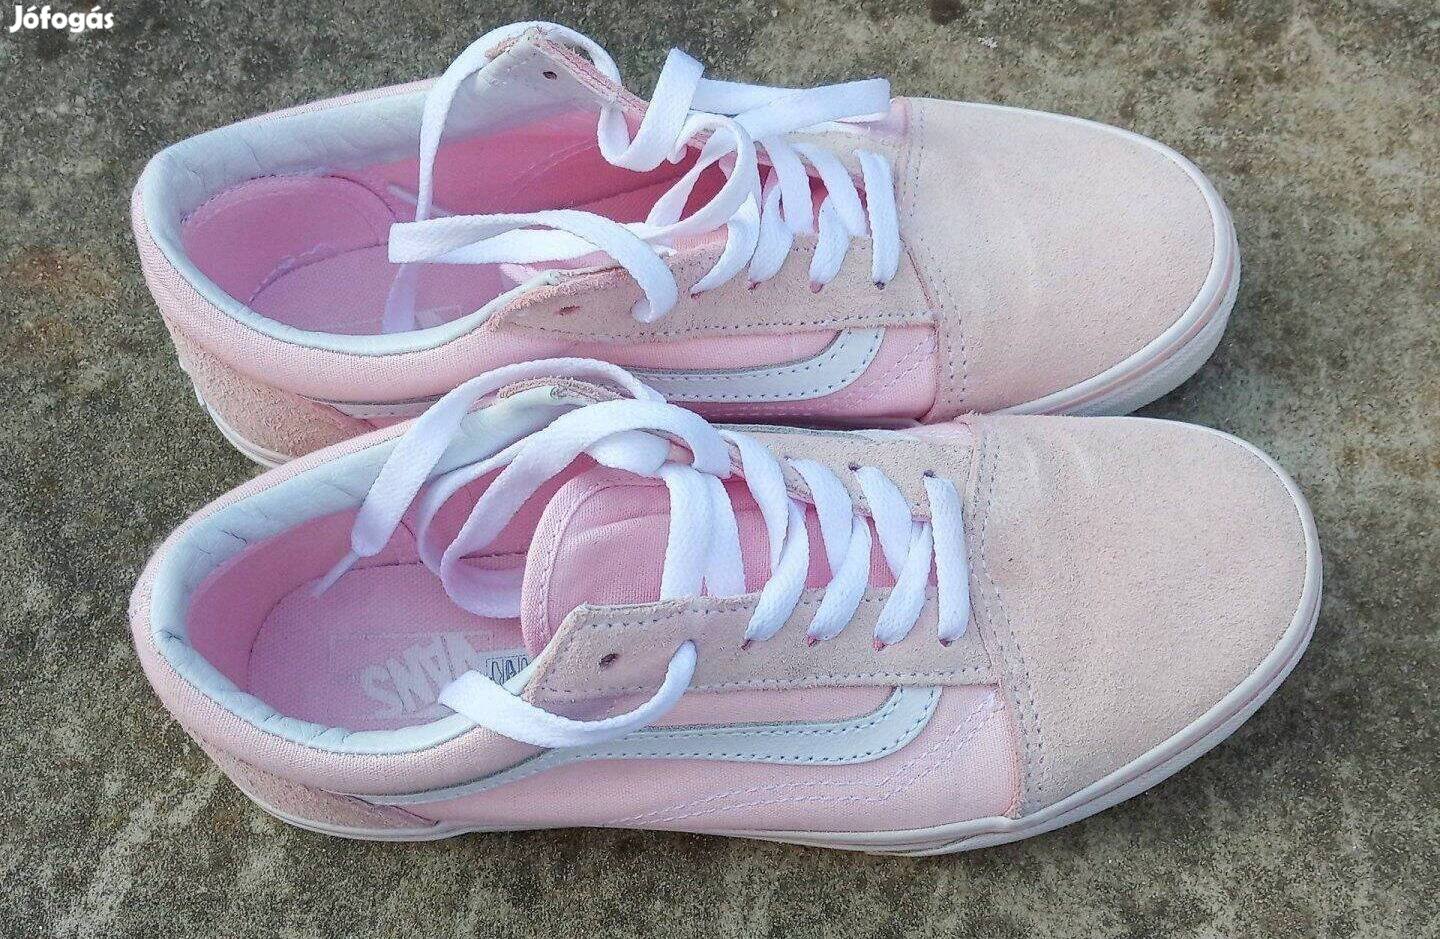 Vans Old Skool pink,rózsaszín női, lány cipő, új állapotú. Méret: 37